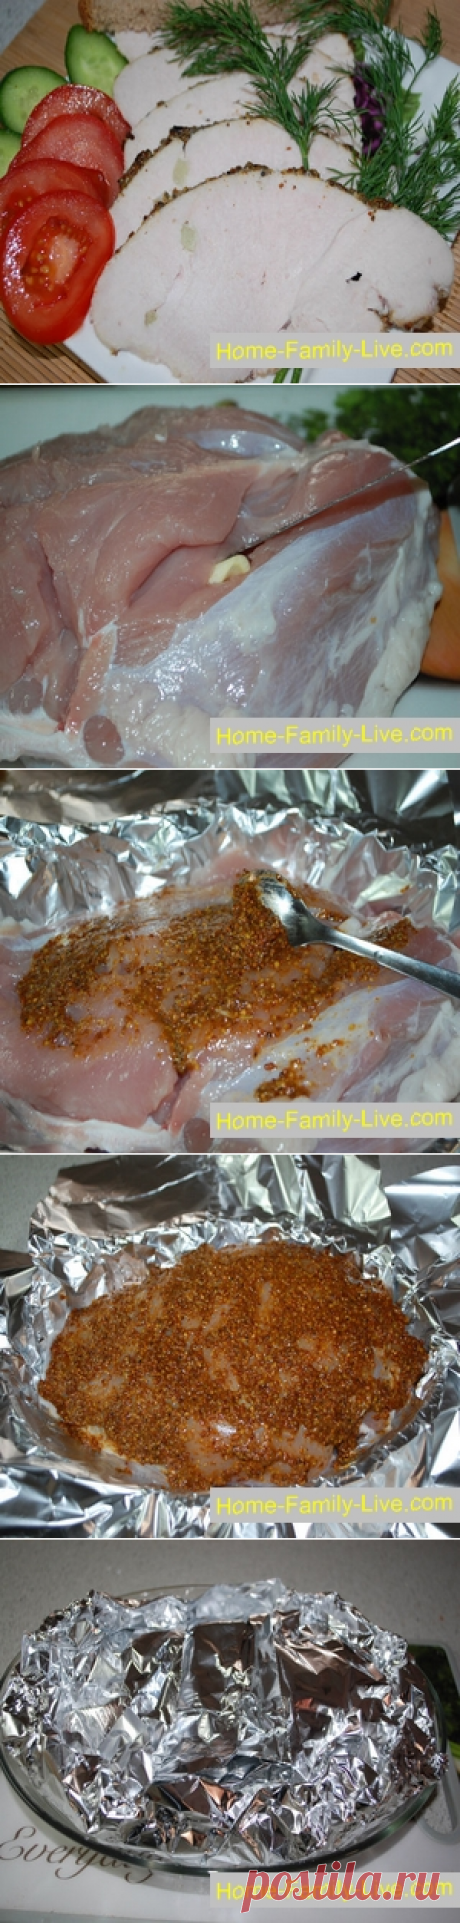 Пастрома/Сайт с пошаговыми рецептами с фото для тех кто любит готовить